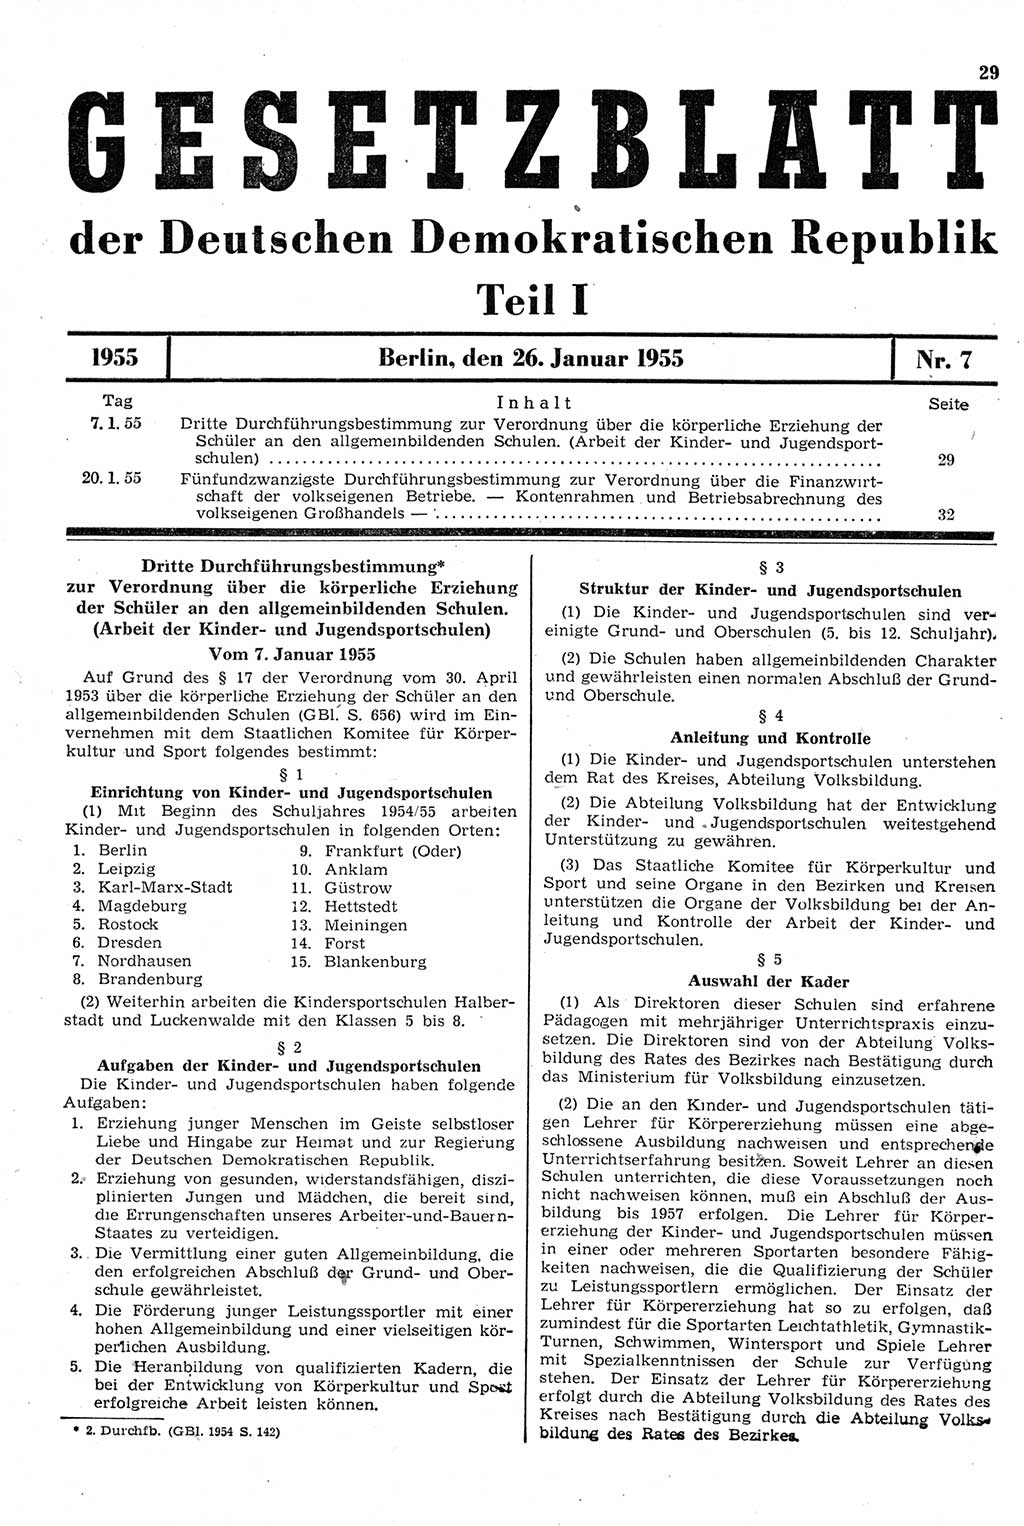 Gesetzblatt (GBl.) der Deutschen Demokratischen Republik (DDR) Teil Ⅰ 1955, Seite 29 (GBl. DDR Ⅰ 1955, S. 29)